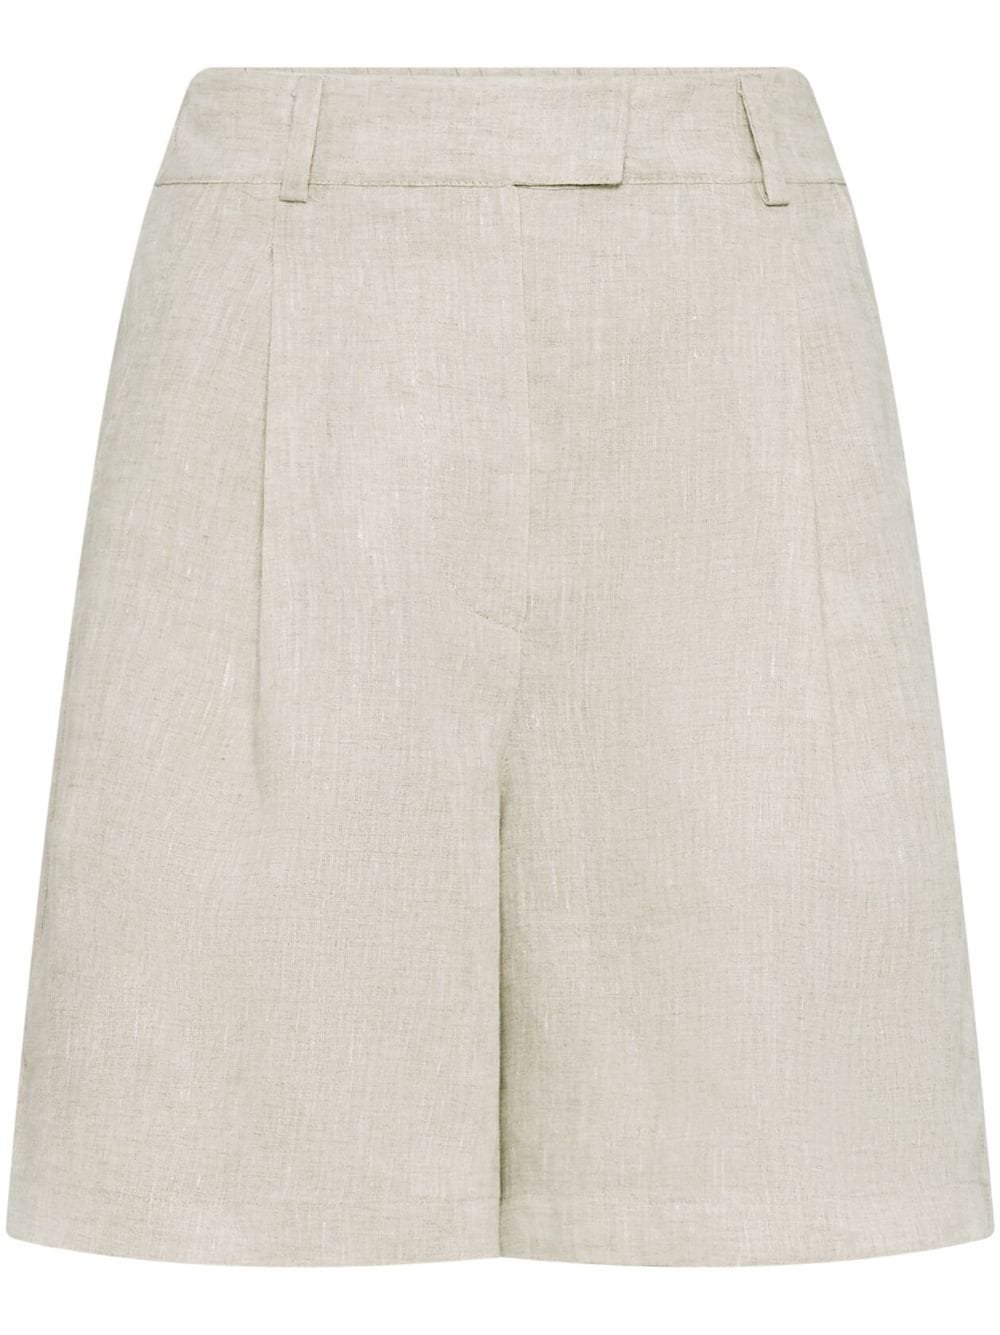 Brunello Cucinelli High-waisted Linen Shorts In C020 Beige